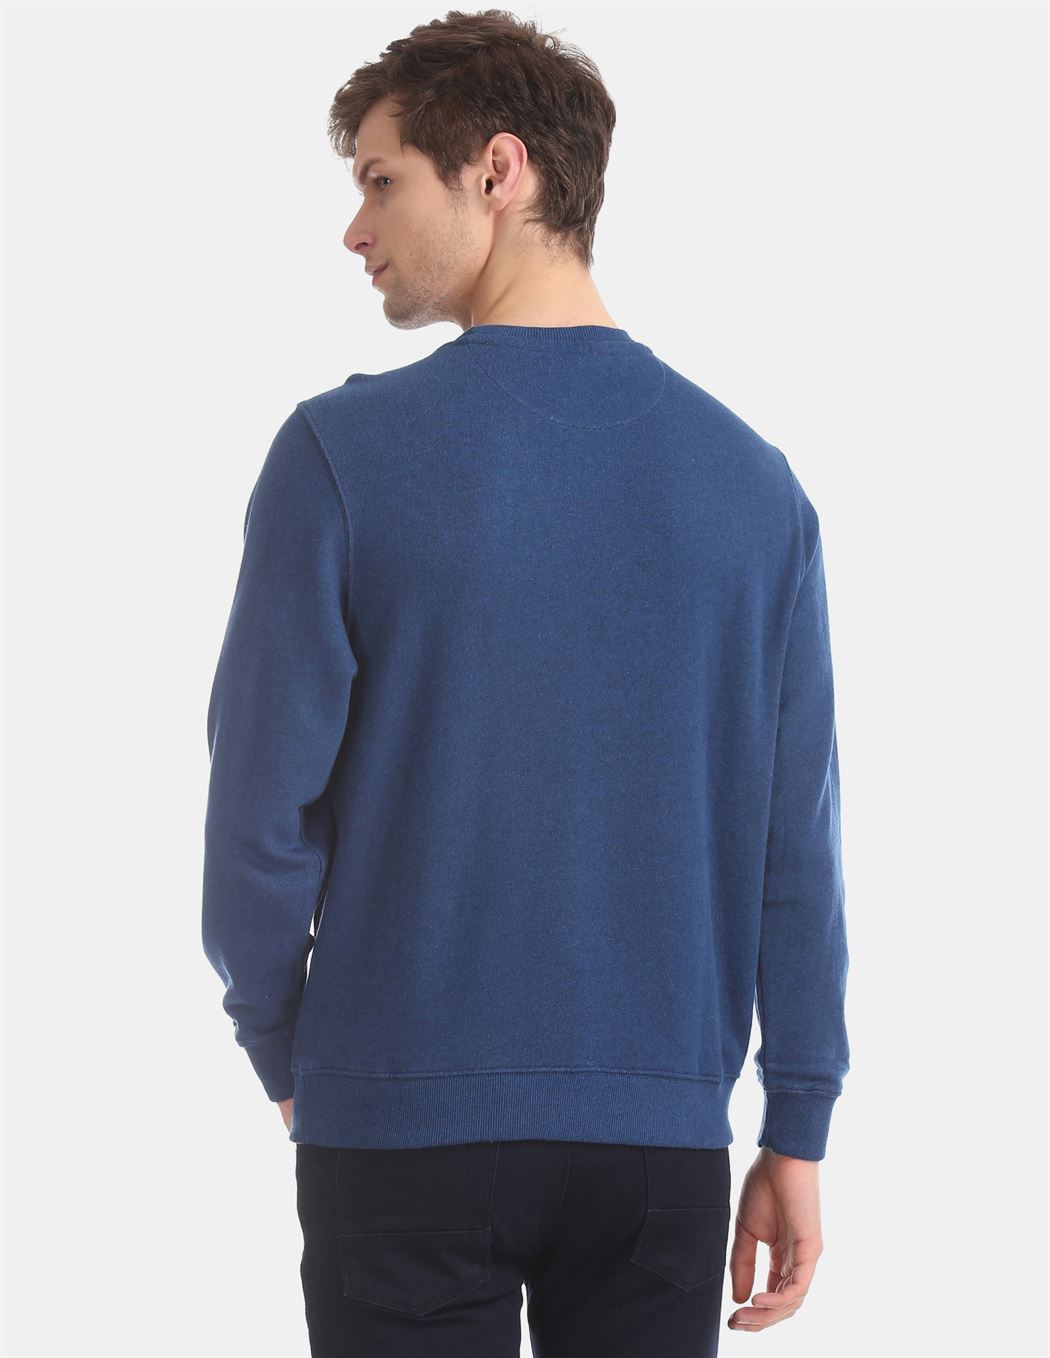 U.S.Polo Association Men'S Casual Wear Solid Blue Sweatshirt